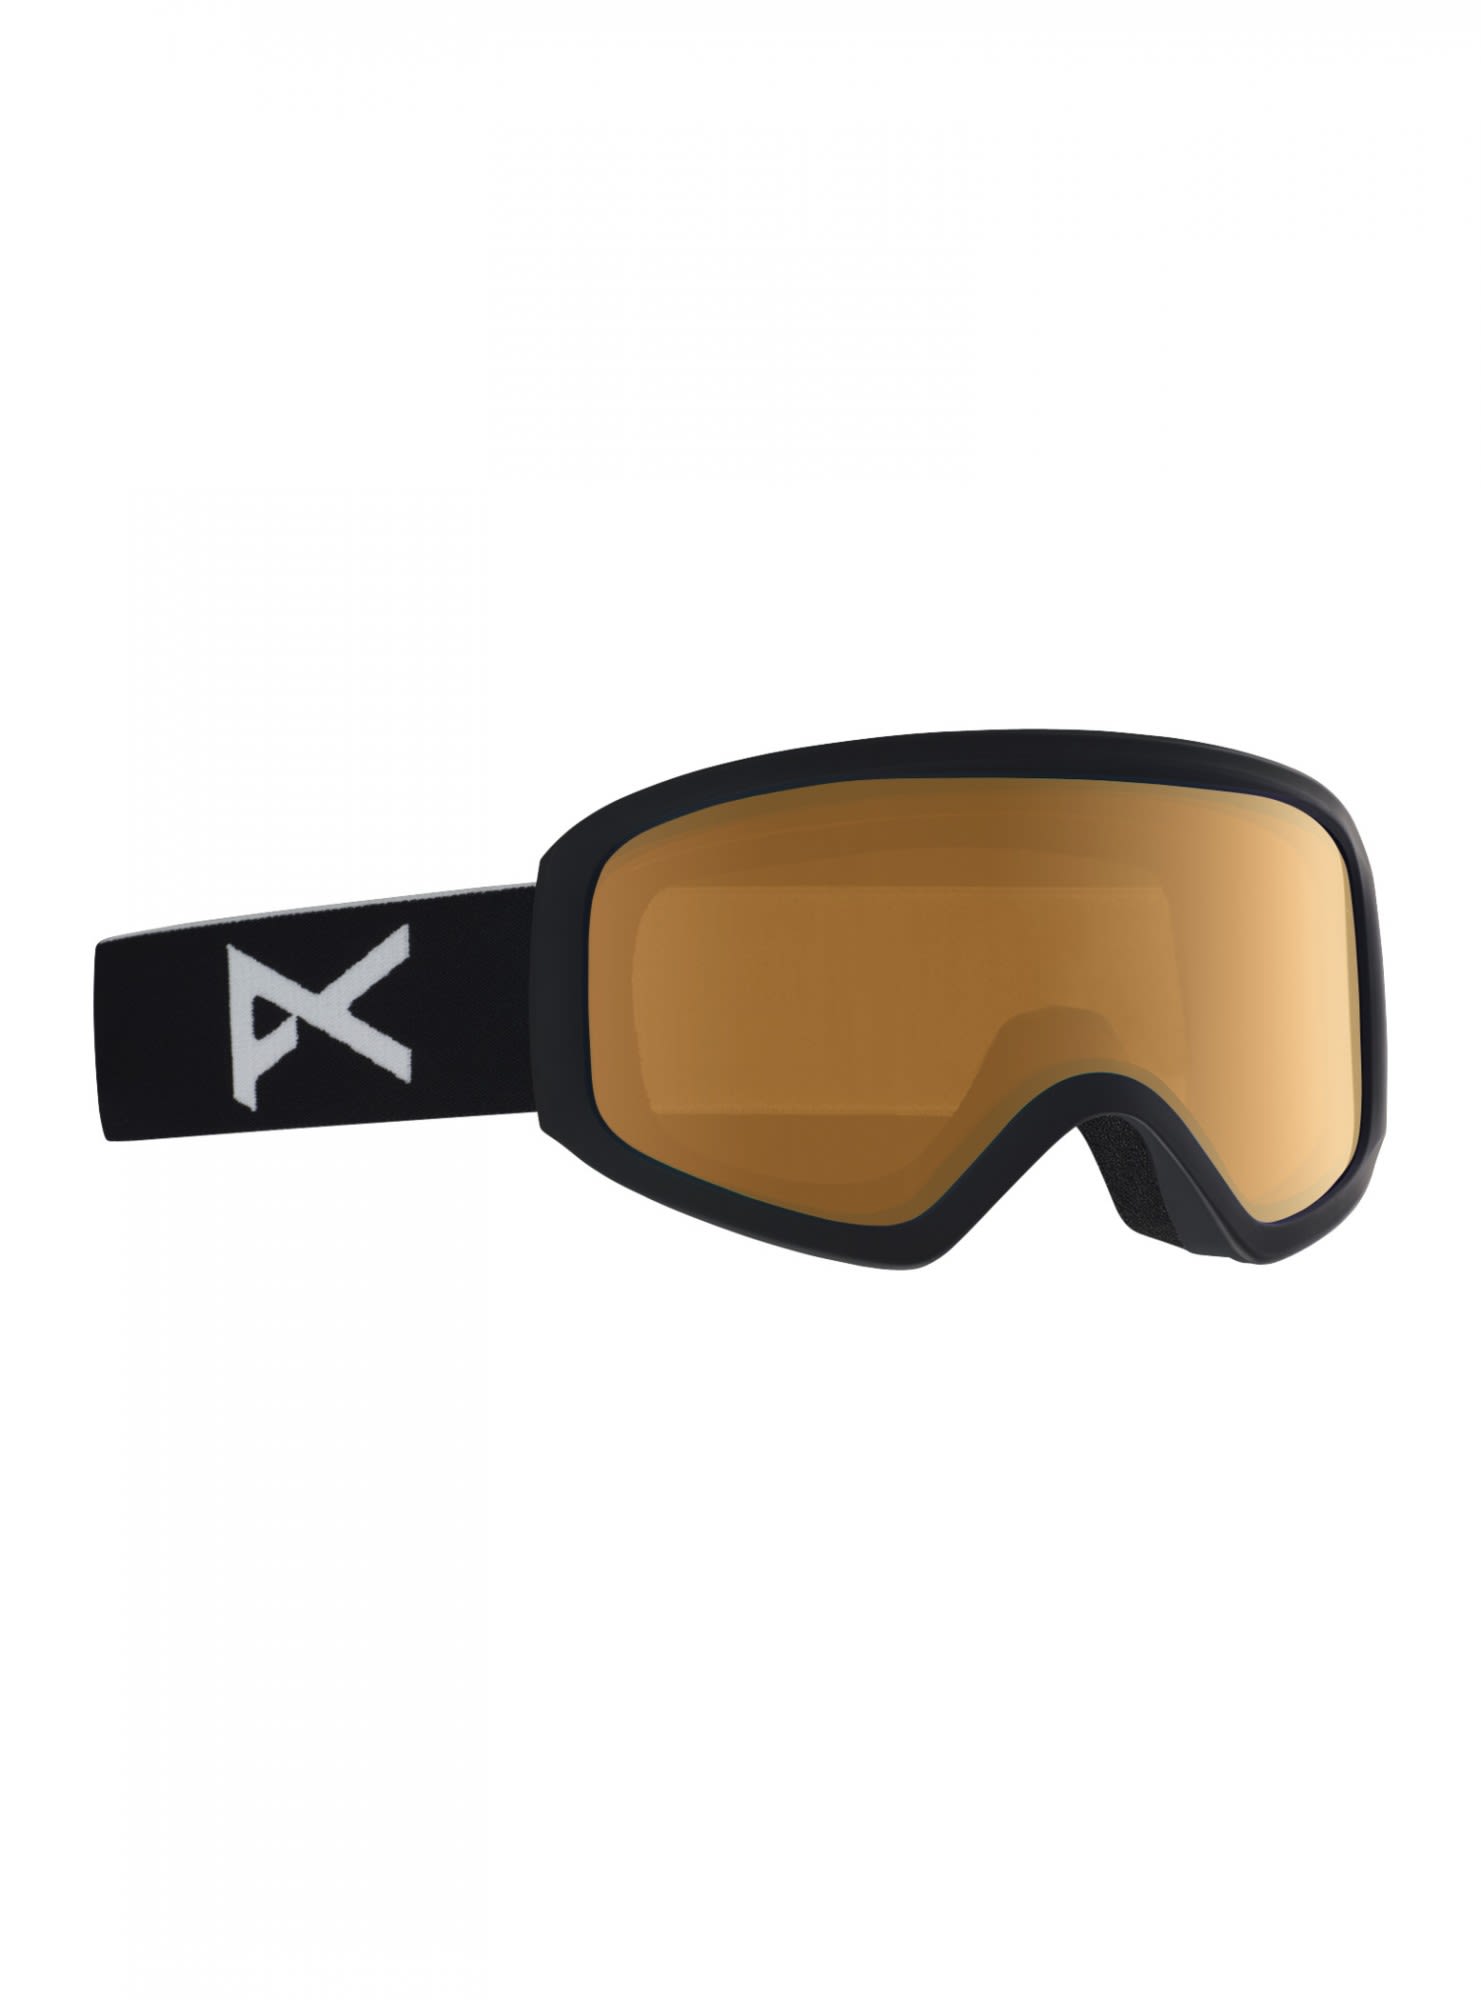 Kompakte brillenkompatible Damen Ski und Snowboardbrille Black - Amber